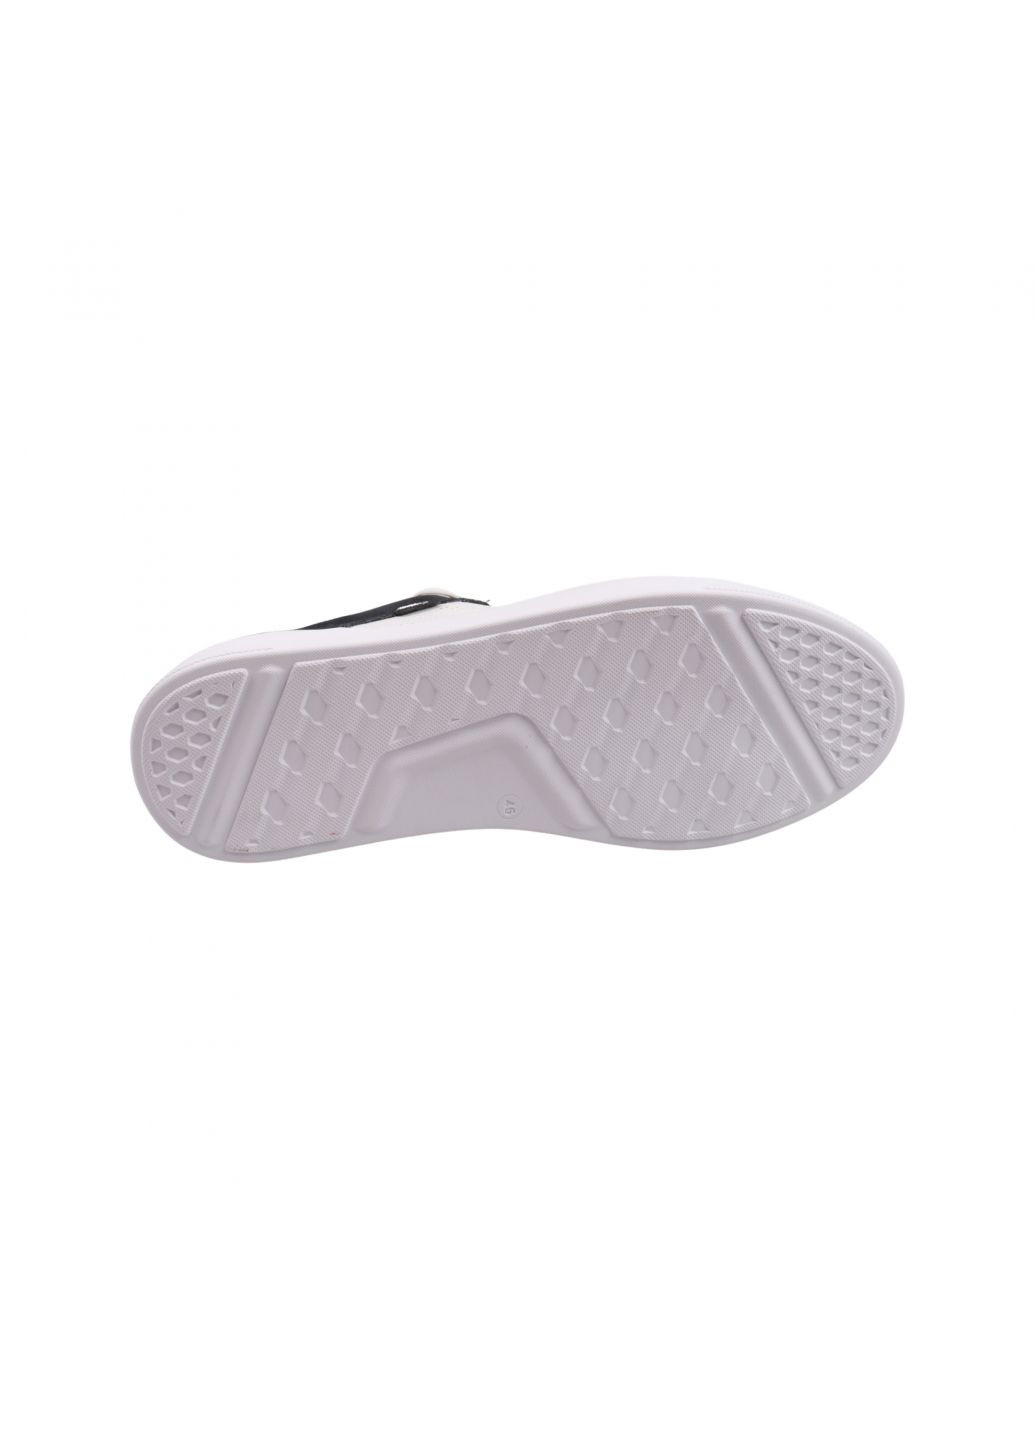 Белые кеды мужские белые натуральная кожа Maxus Shoes 117-23LTCP